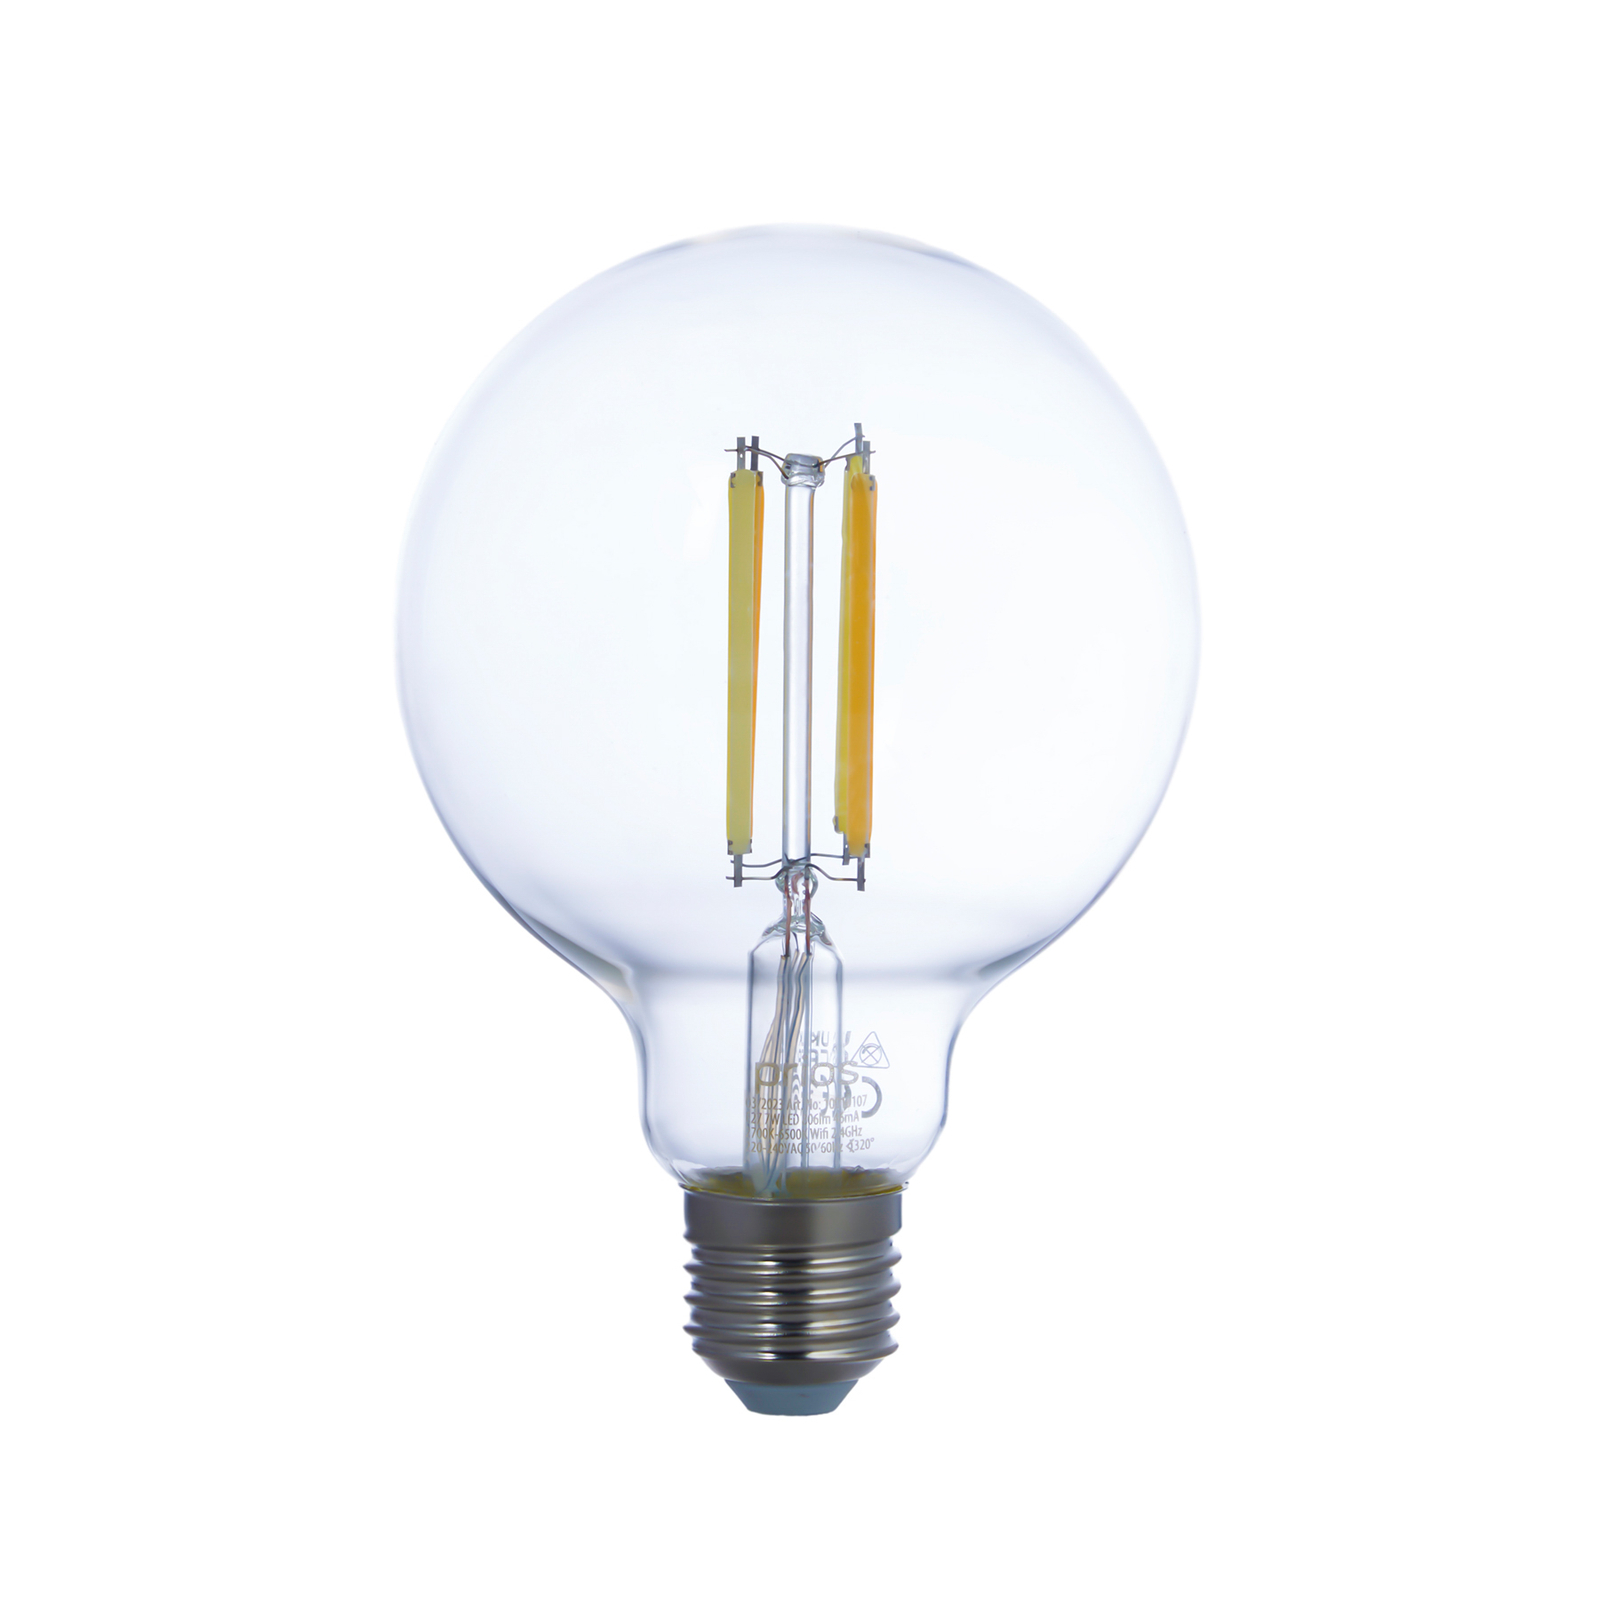 Smart LED E27 G95 7W WLAN čirá tunable white